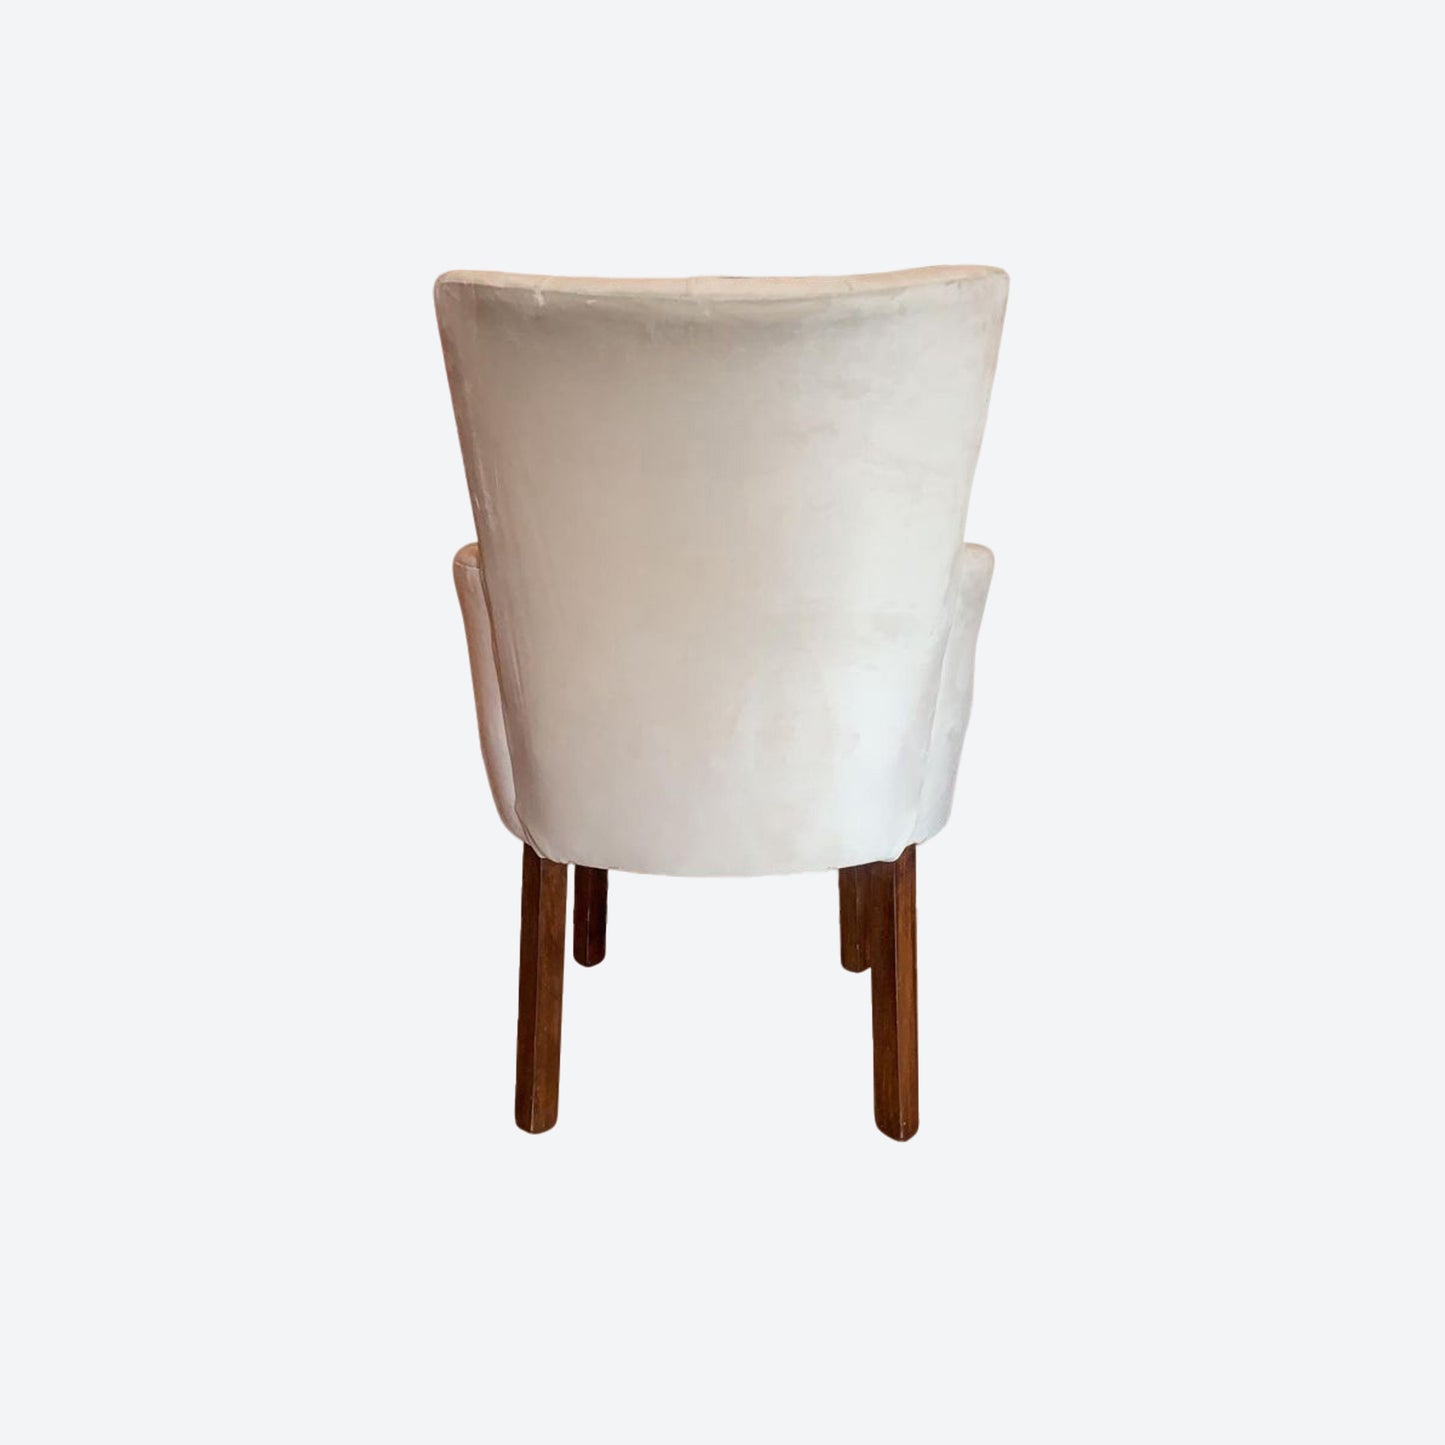 Light Gray Tufted Velvet Accent Chair  [Mesquite Wood Legs And Frame]- SK- SKU 1151